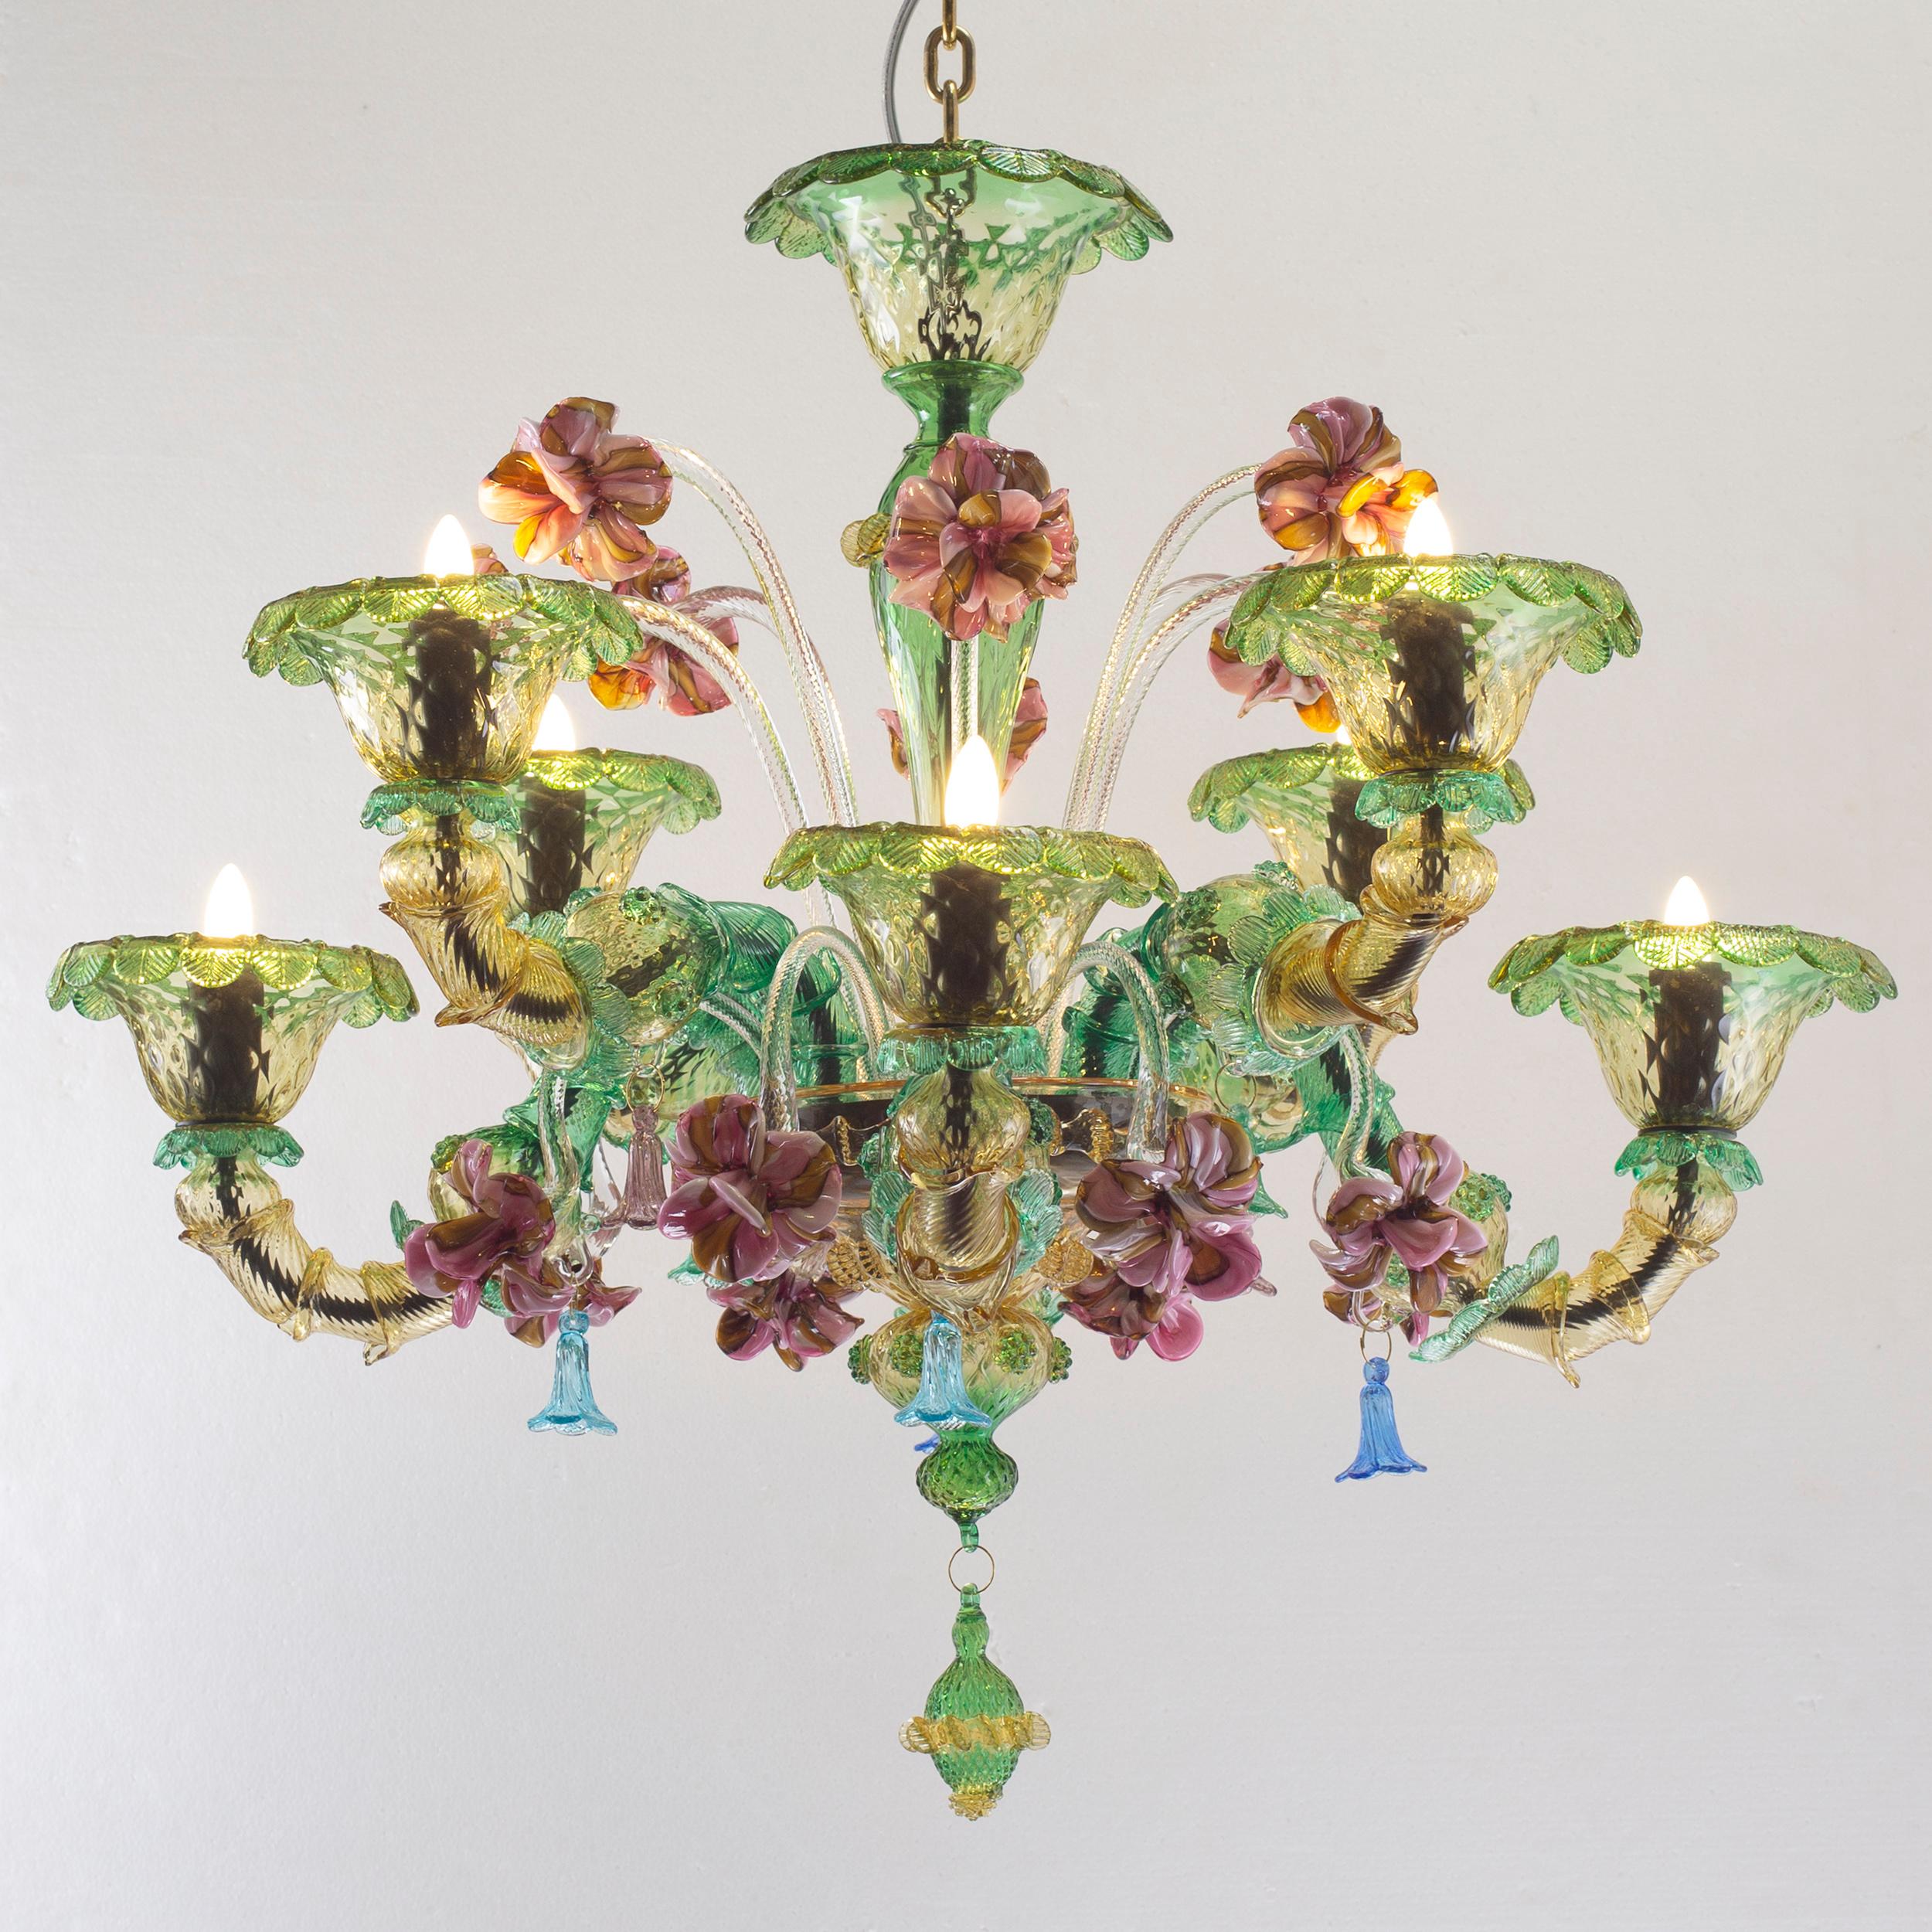 Semi Rezzonico 8-armiger Kronleuchter auf 2 Ebenen aus bernsteinfarbenem und grünem Murano-Glas, mehrfarbige Blumen aus Glaspaste von Multiforme
Es handelt sich um ein künstlerisches Modell, das von unseren erfahrenen Glasmachermeistern hergestellt